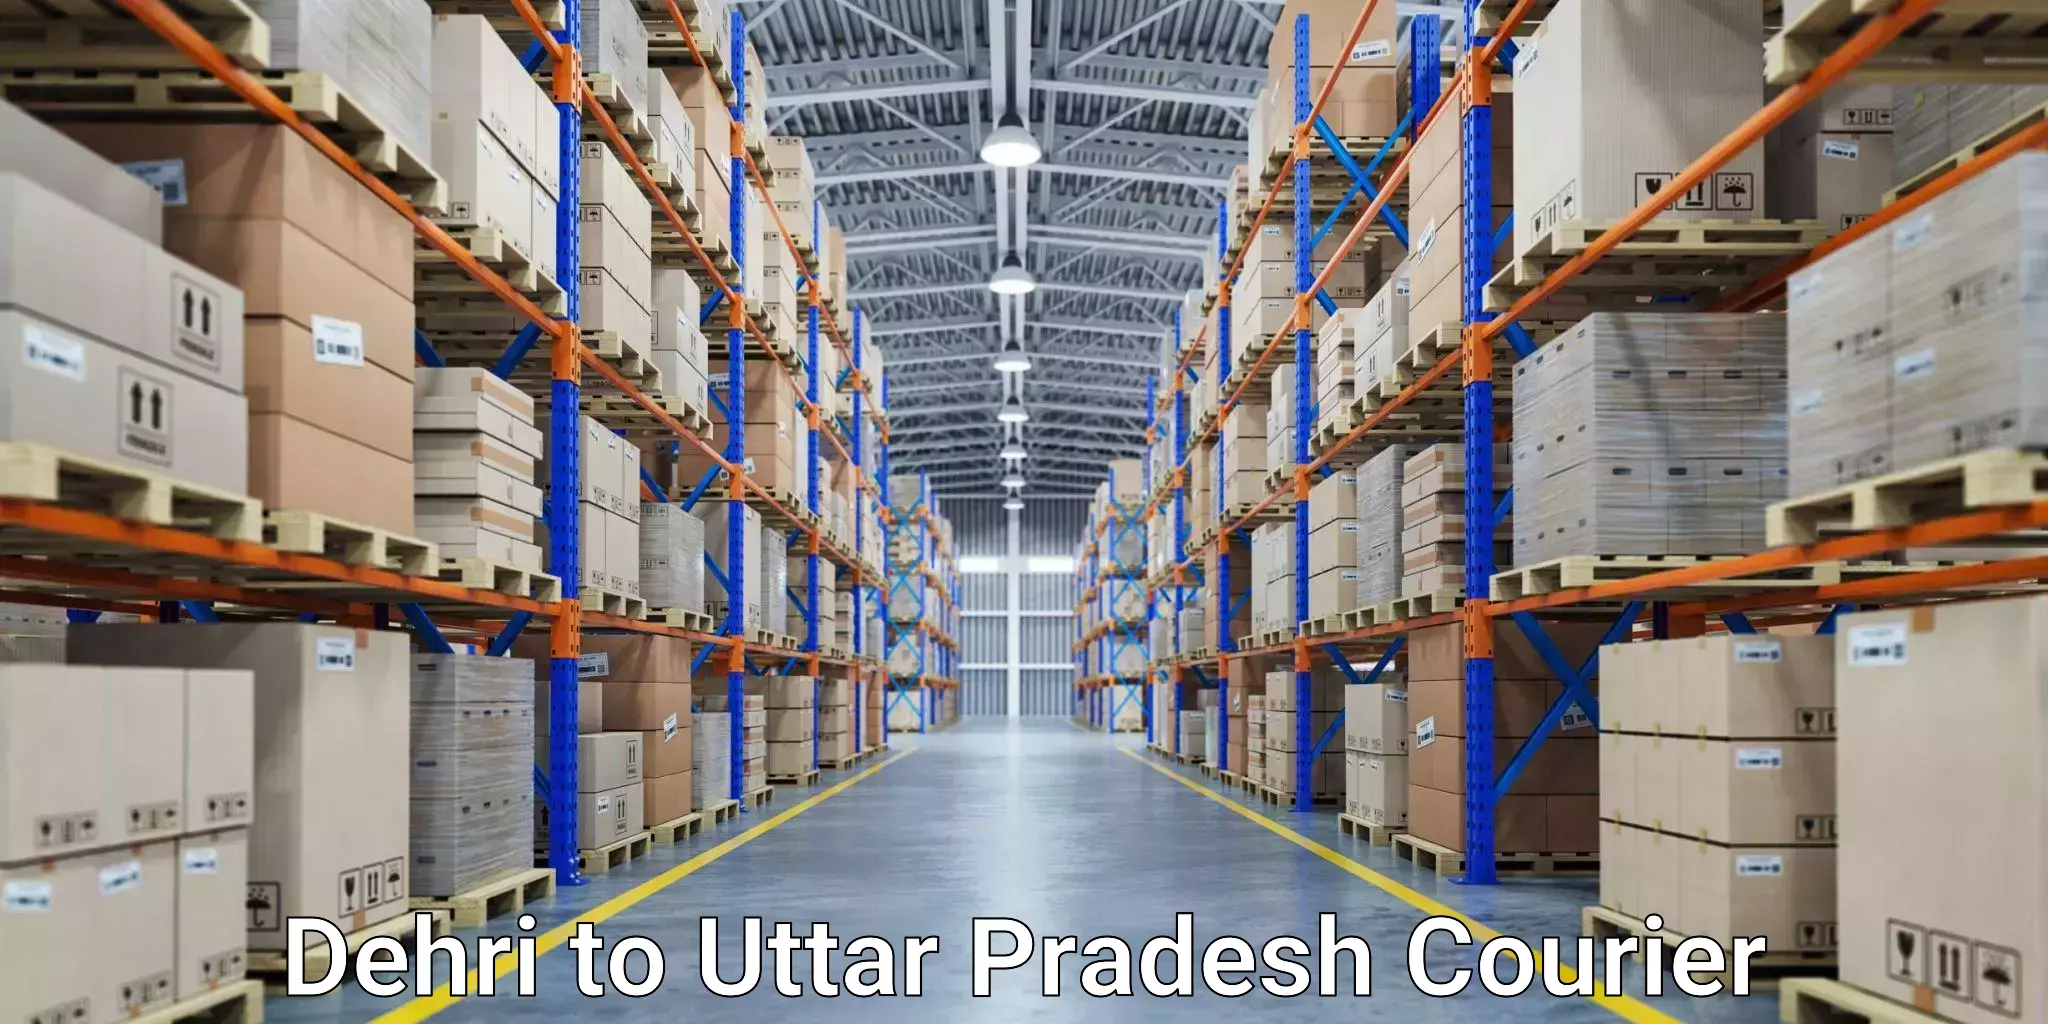 Professional courier services Dehri to Uttar Pradesh